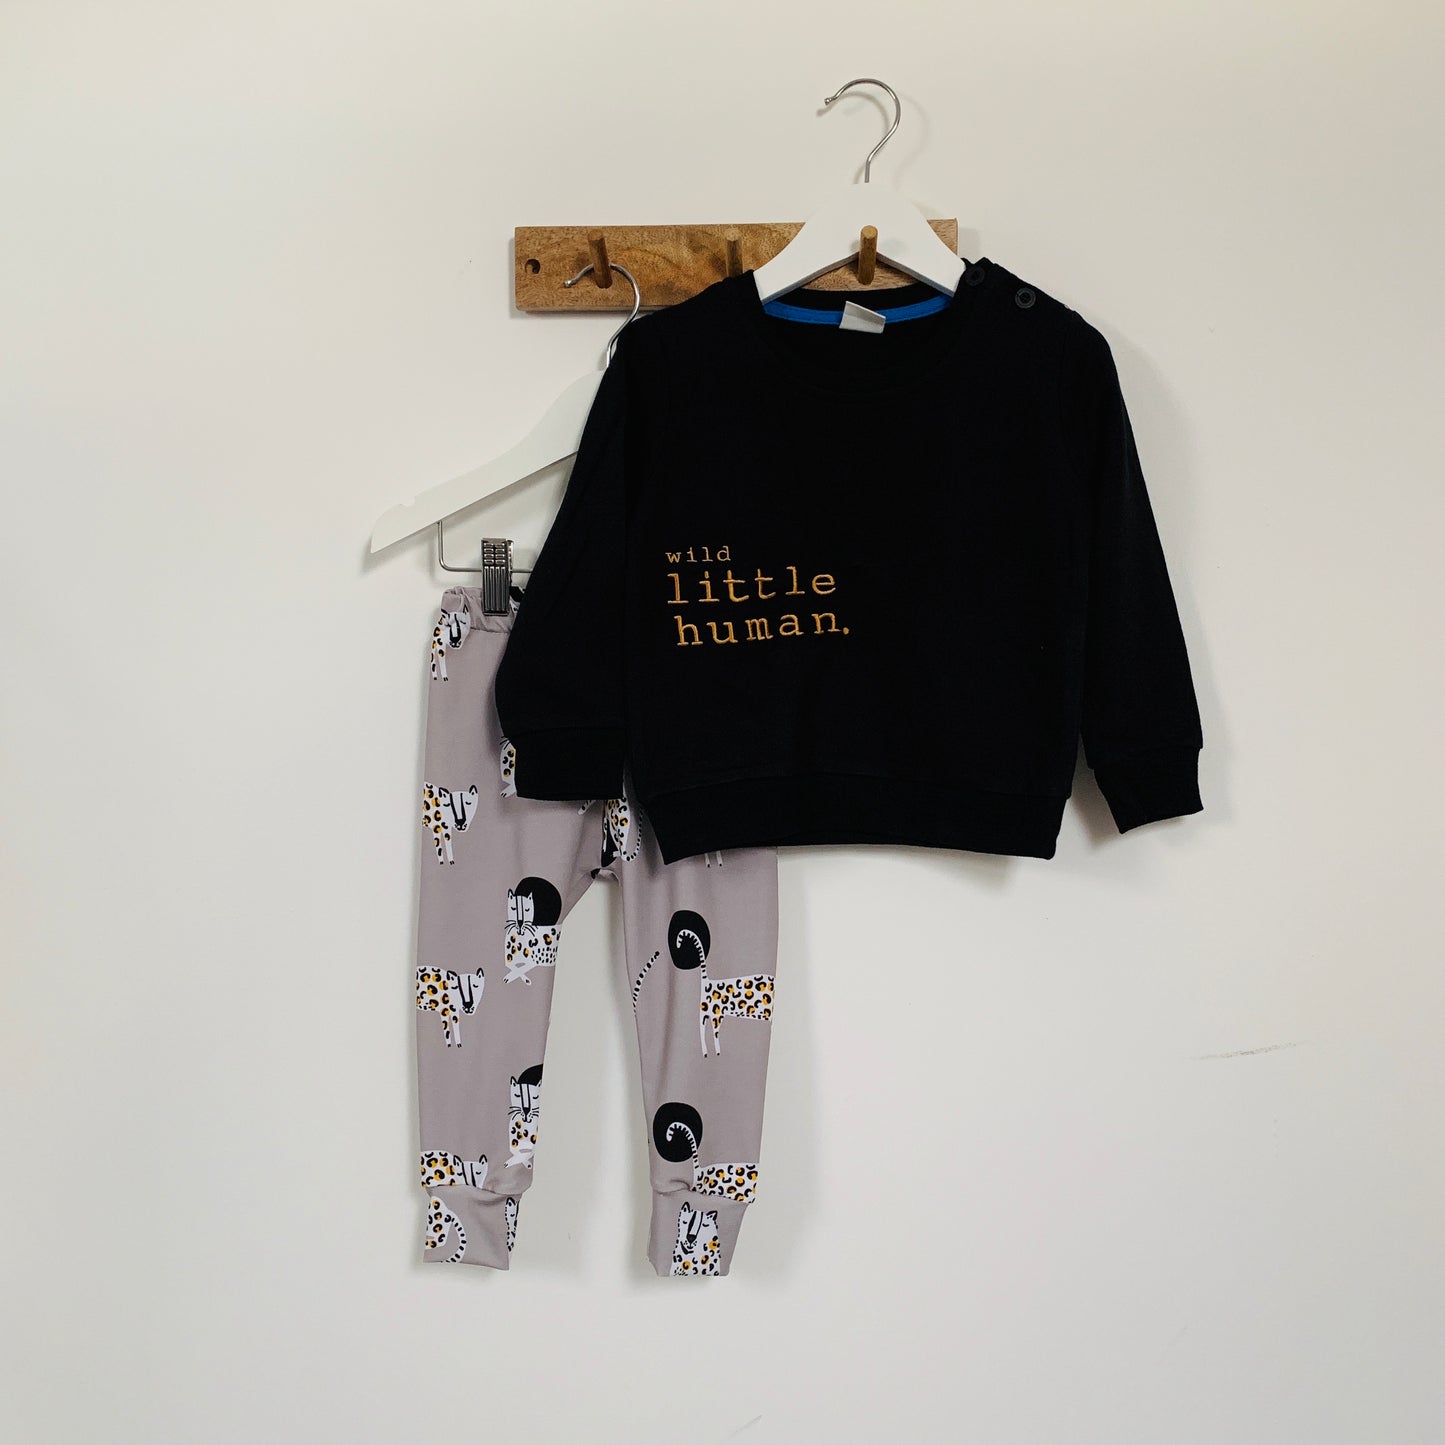 SALE - Children’s Little Human Sweatshirts in Black Sweet, Weird or Wild